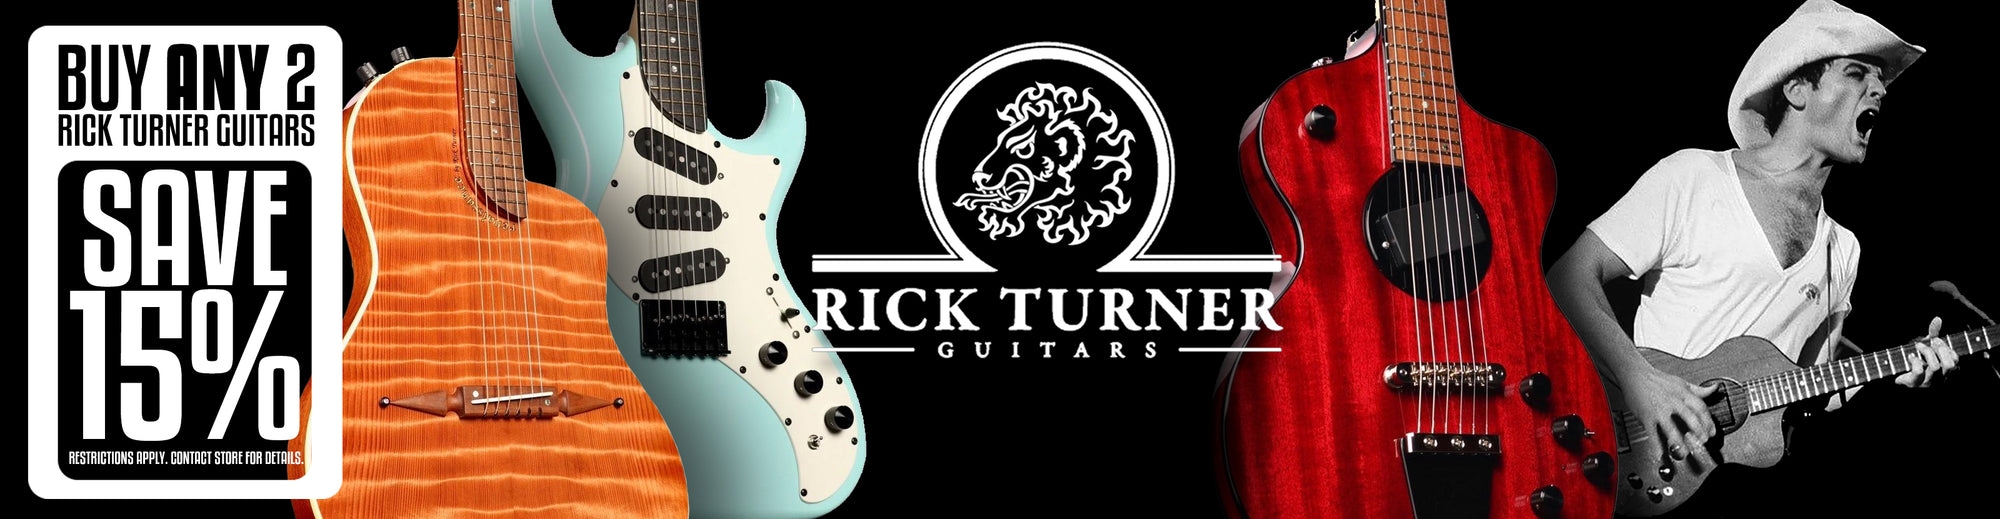 Rick Turner Guitars for Sale | Heartbreaker Guitars | #1 Turner